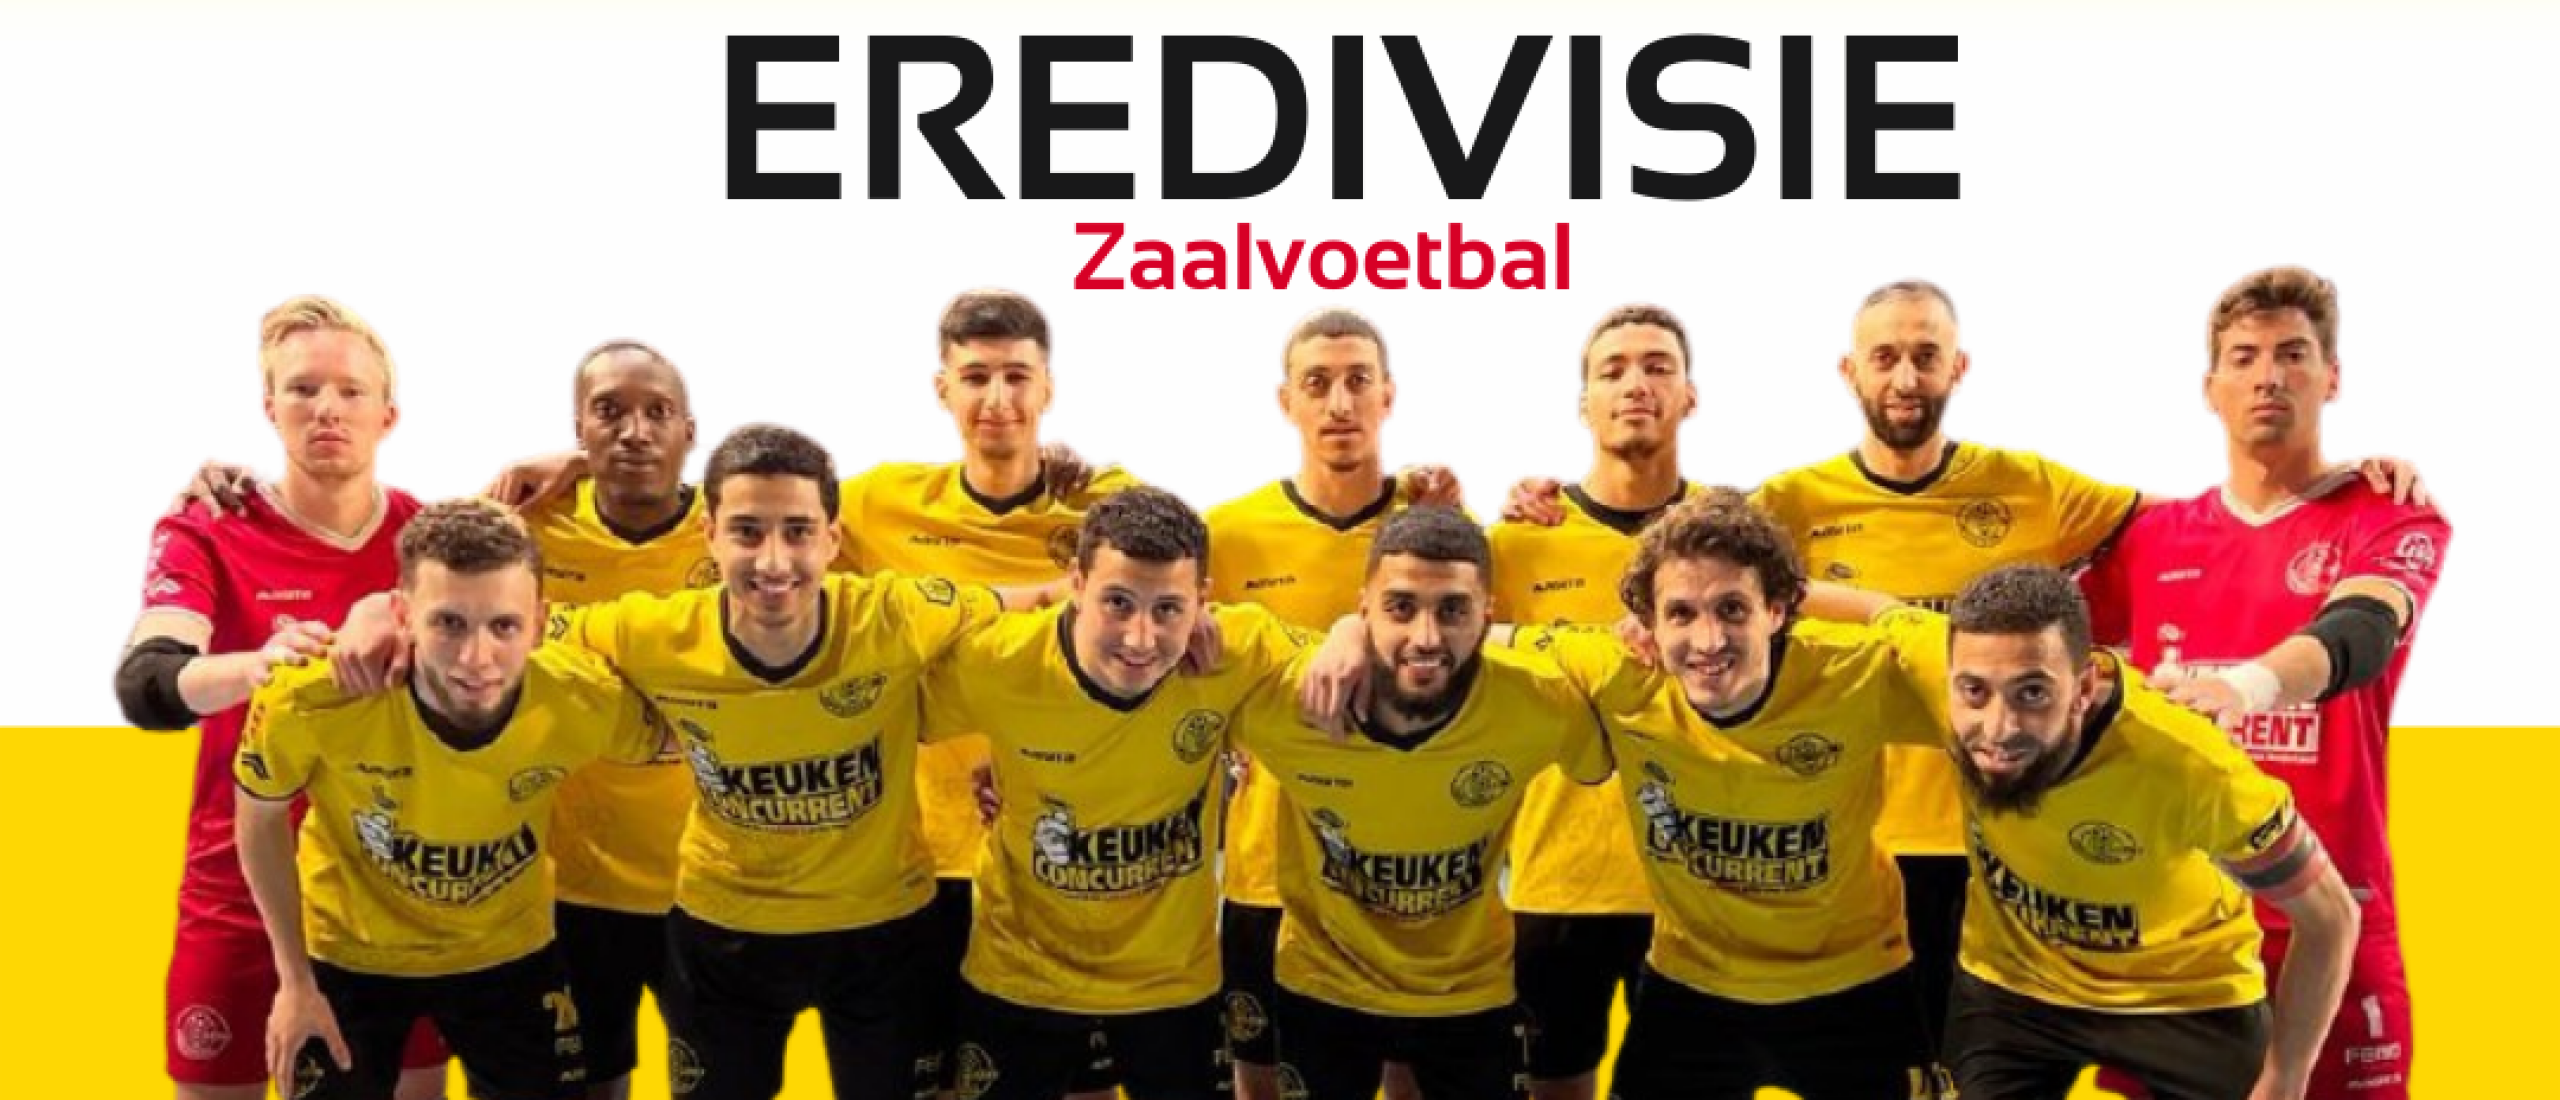 ASV LEBO kwalificeert zich voor de Eredivisie Zaalvoetbal play-offs